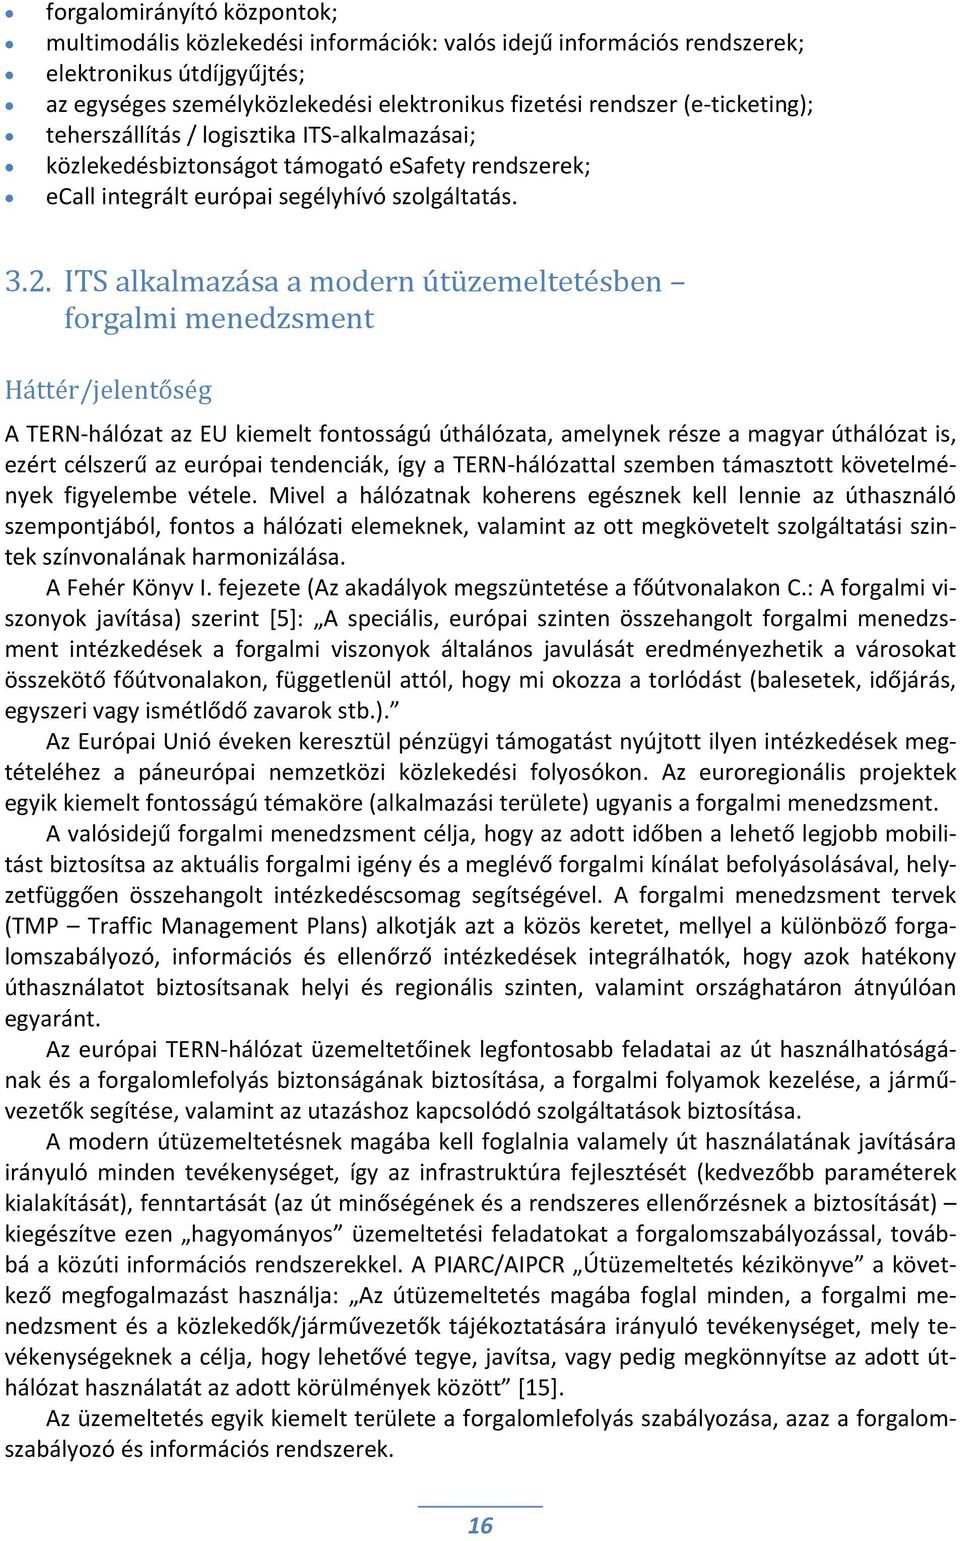 ITS alkalmazása a modern útüzemeltetésben forgalmi menedzsment Háttér/jelentőség A TERN hálózat az EU kiemelt fontosságú úthálózata, amelynek része a magyar úthálózat is, ezért célszerű az európai